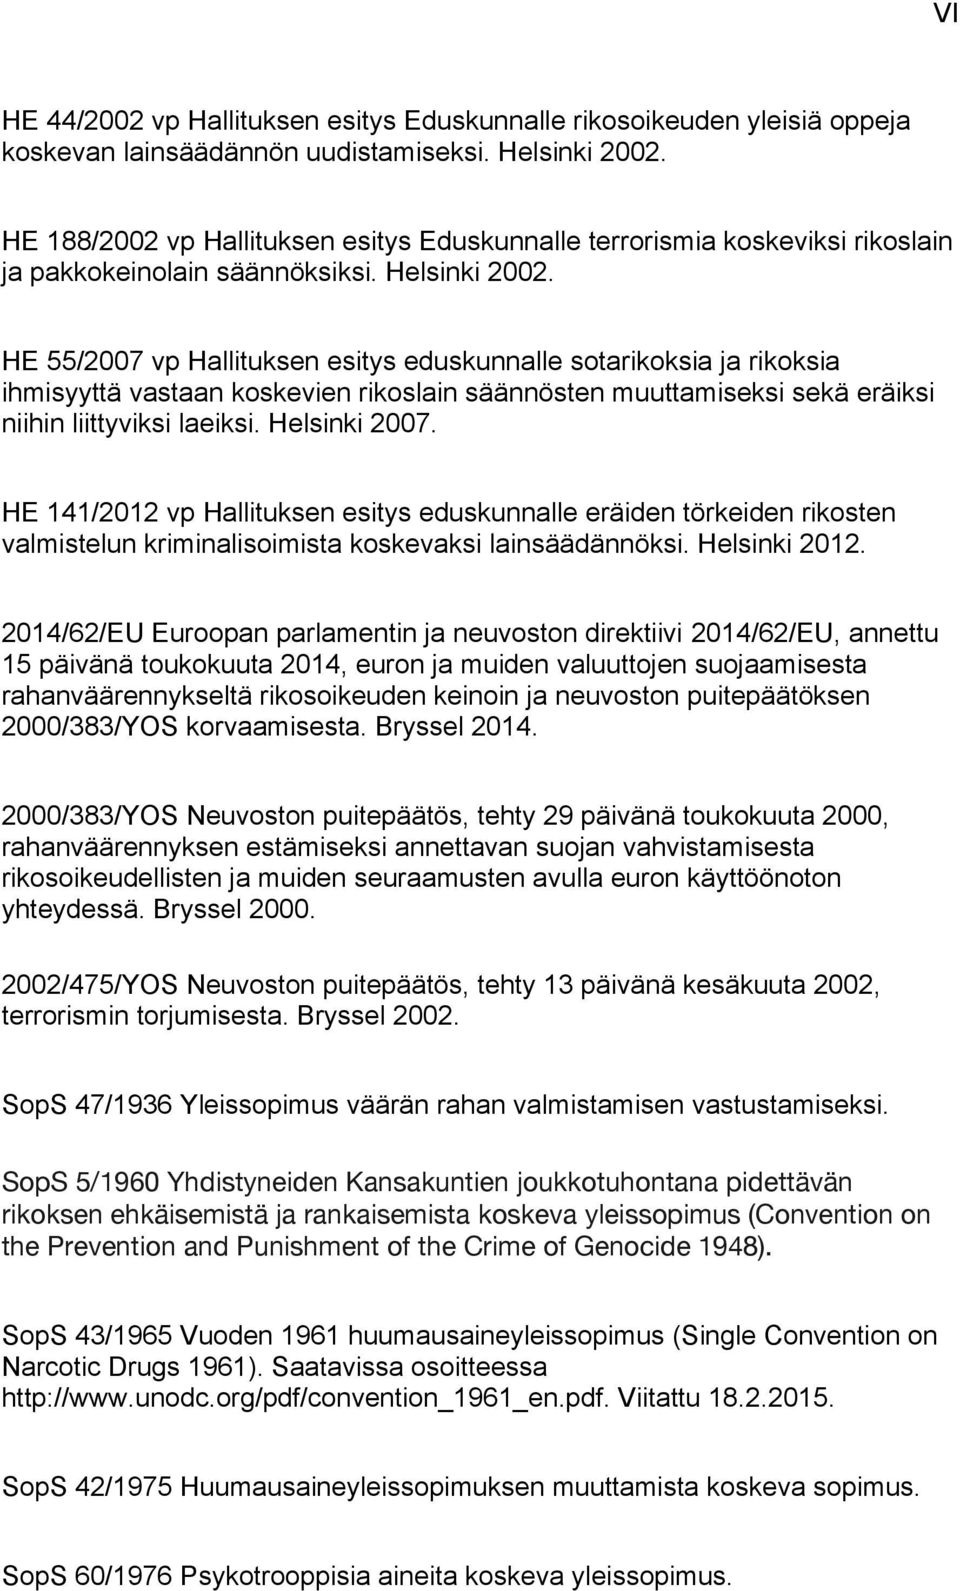 HE 55/2007 vp Hallituksen esitys eduskunnalle sotarikoksia ja rikoksia ihmisyyttä vastaan koskevien rikoslain säännösten muuttamiseksi sekä eräiksi niihin liittyviksi laeiksi. Helsinki 2007.